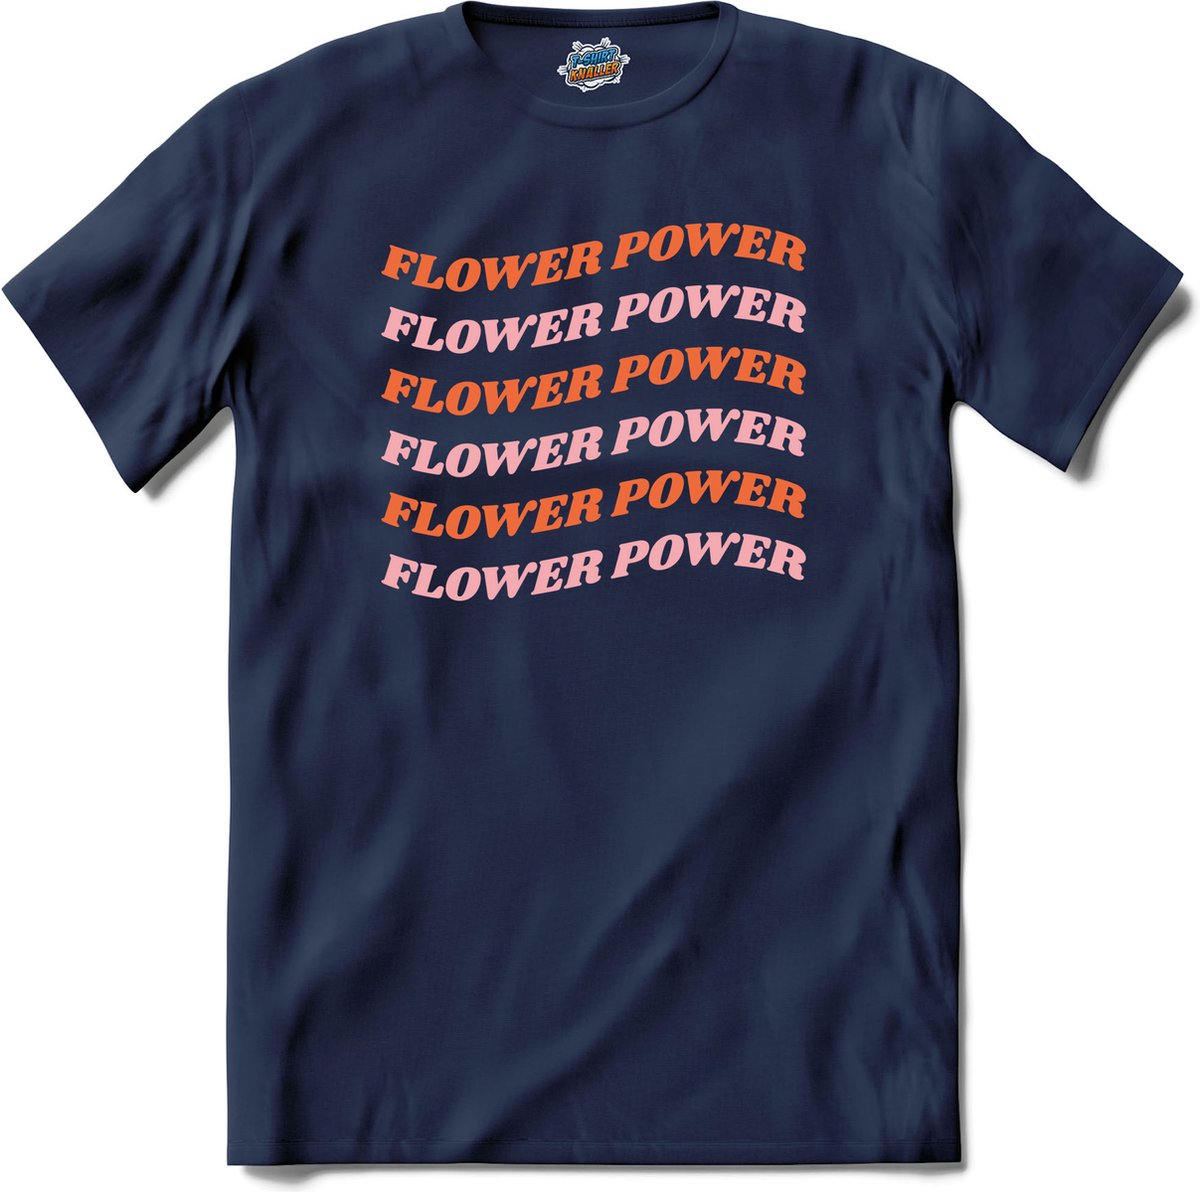 Flower power - T-Shirt - Jongens - Navy Blue - Maat 6 jaar